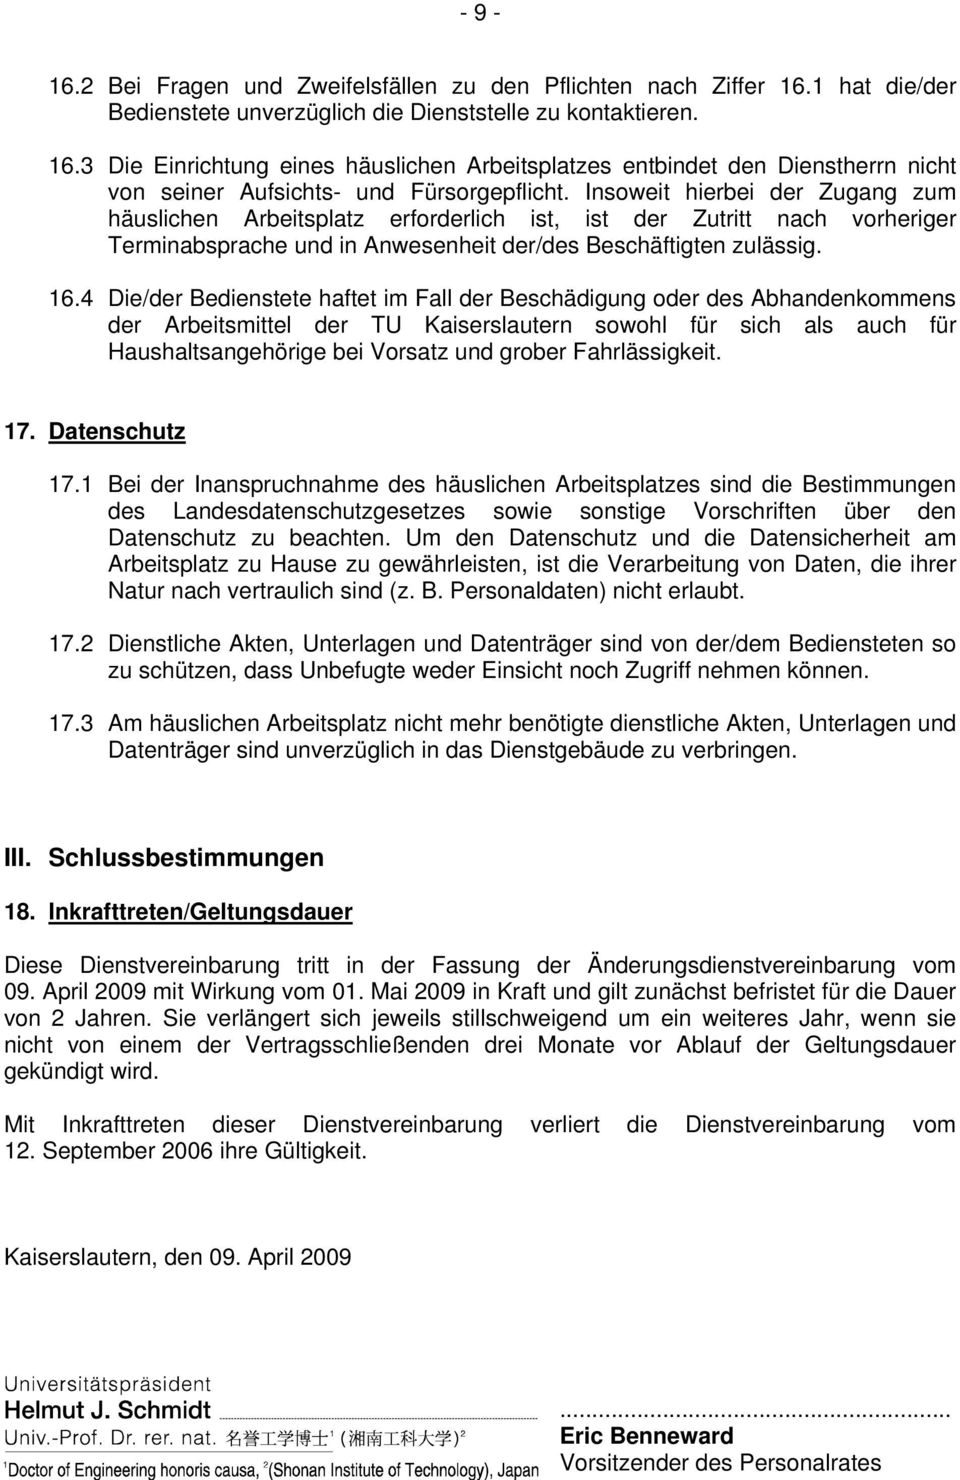 4 Die/der Bedienstete haftet im Fall der Beschädigung oder des Abhandenkommens der Arbeitsmittel der TU Kaiserslautern sowohl für sich als auch für Haushaltsangehörige bei Vorsatz und grober